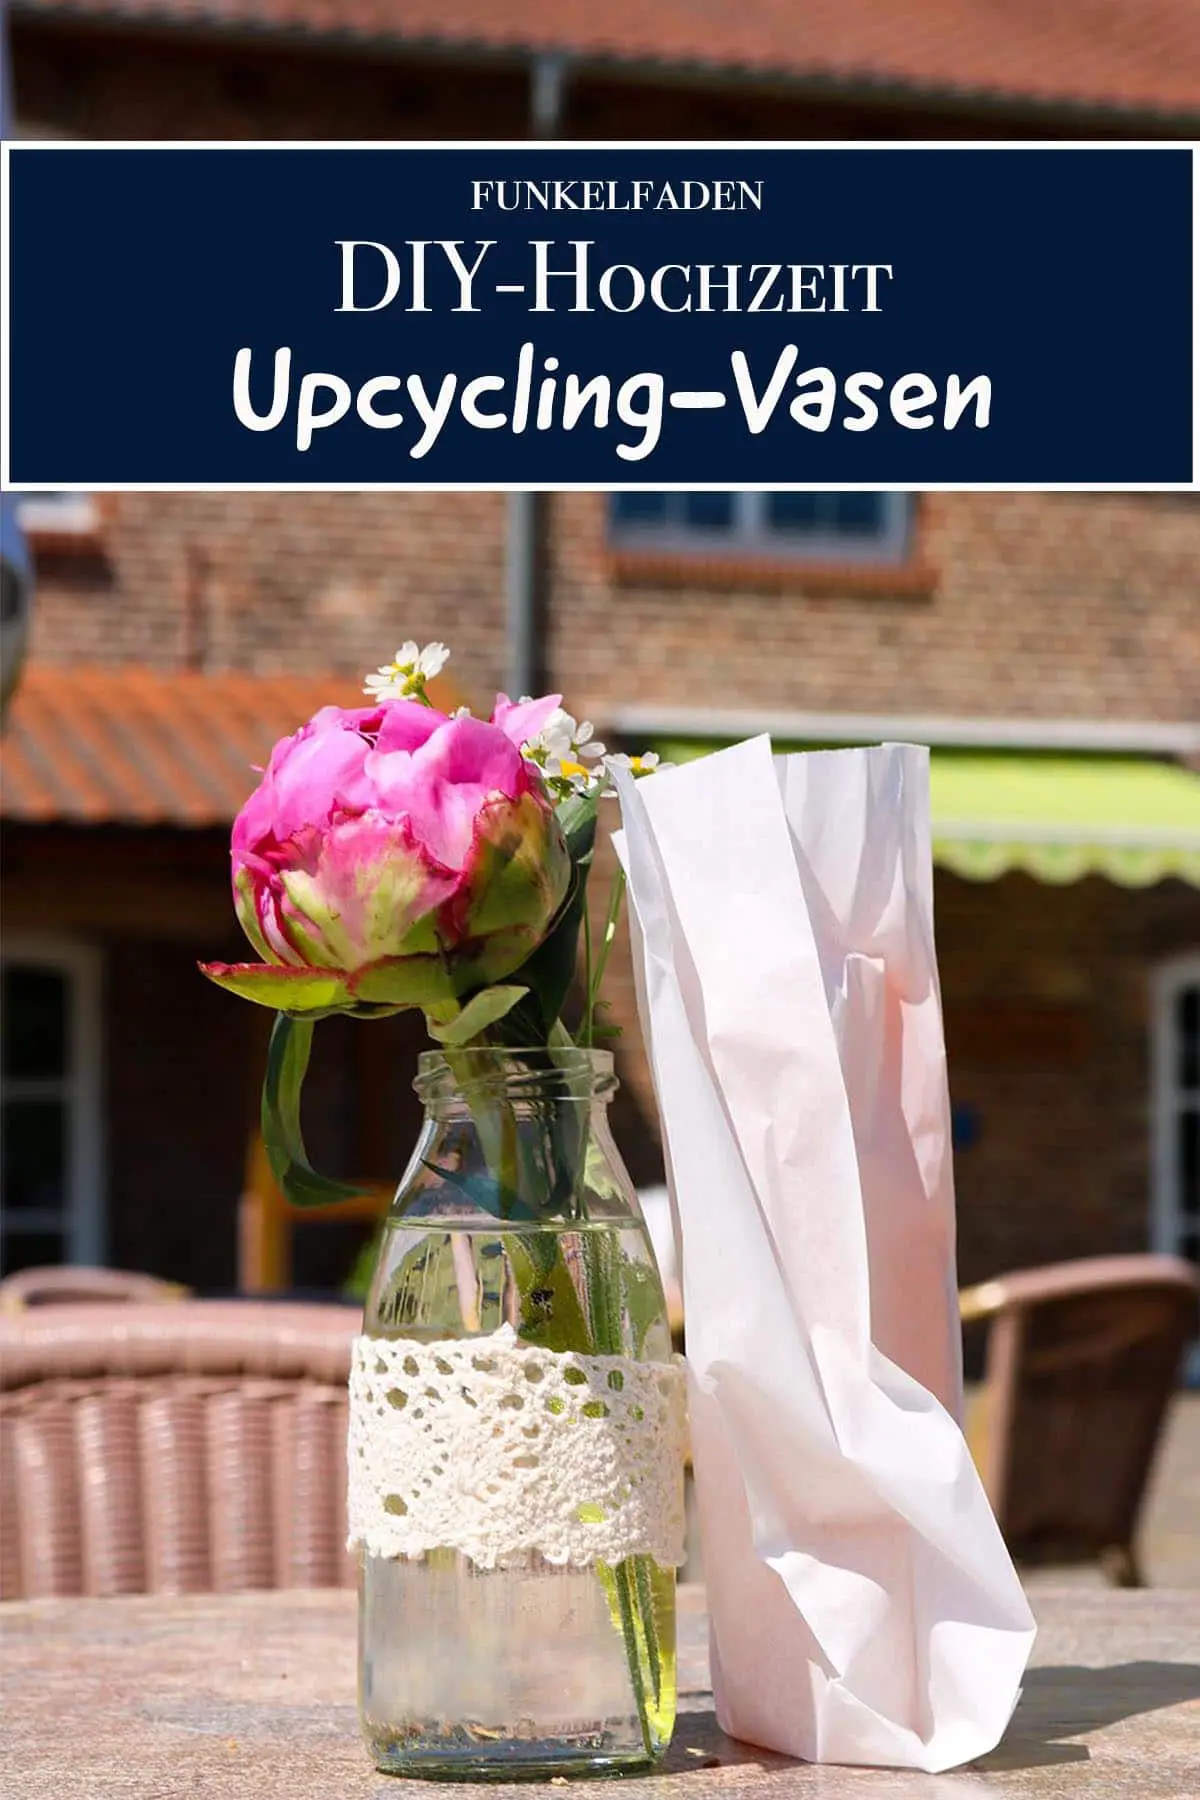 DIY – Hochzeit Upcycling Vasen